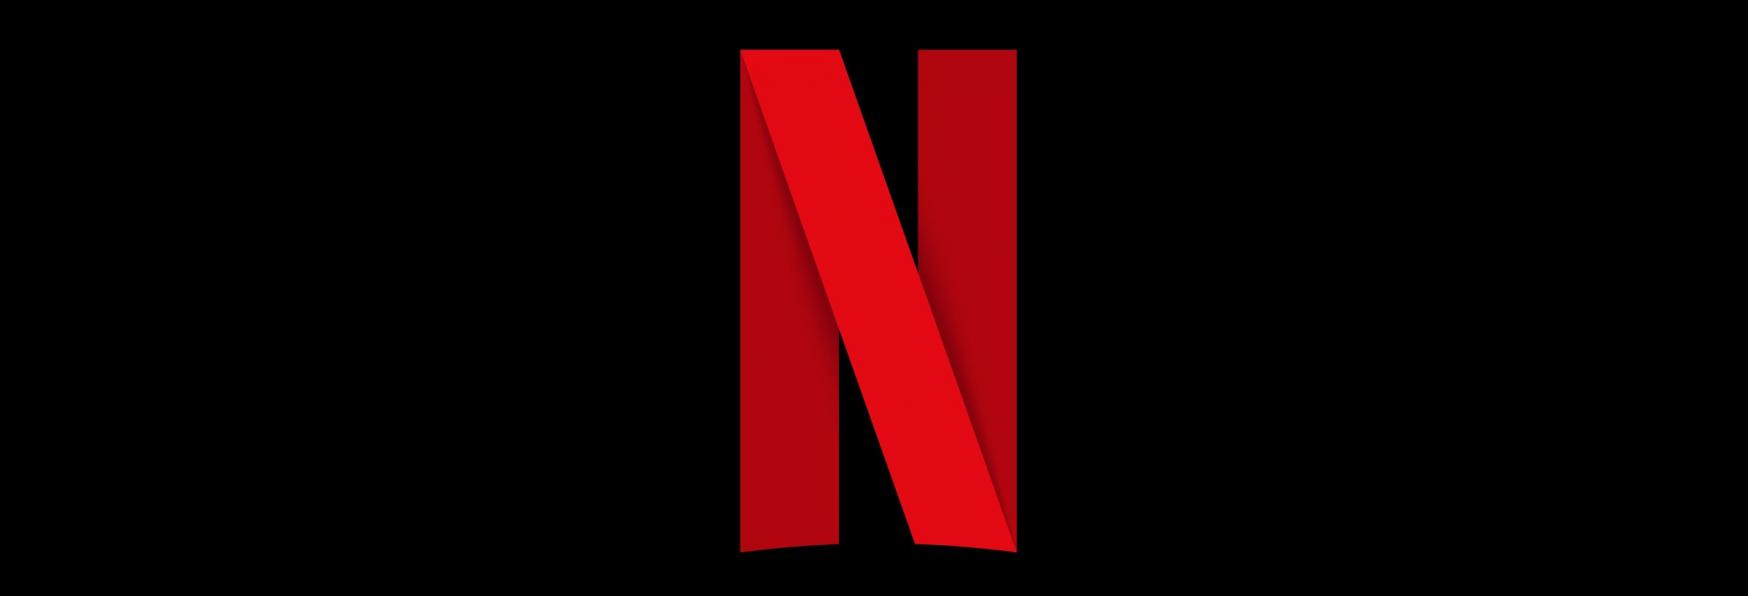 Netflix annuncia l’arrivo di 7 nuove Serie TV Originali con Rowan Atkinson, Sam Mendes e Andy Serkis